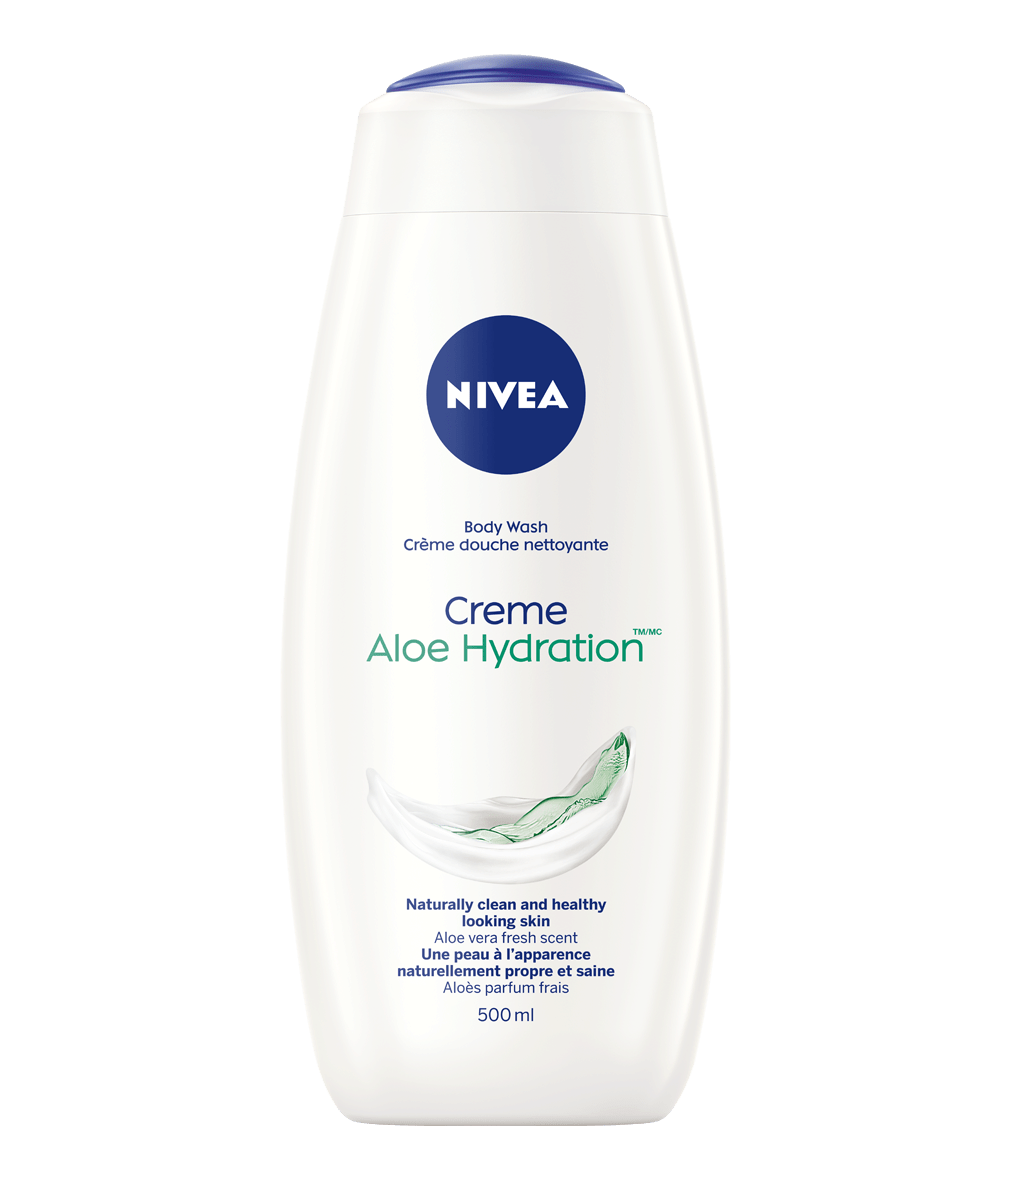 NIVEA Crème douche nettoyante Aloe Hydration (TM/MC)